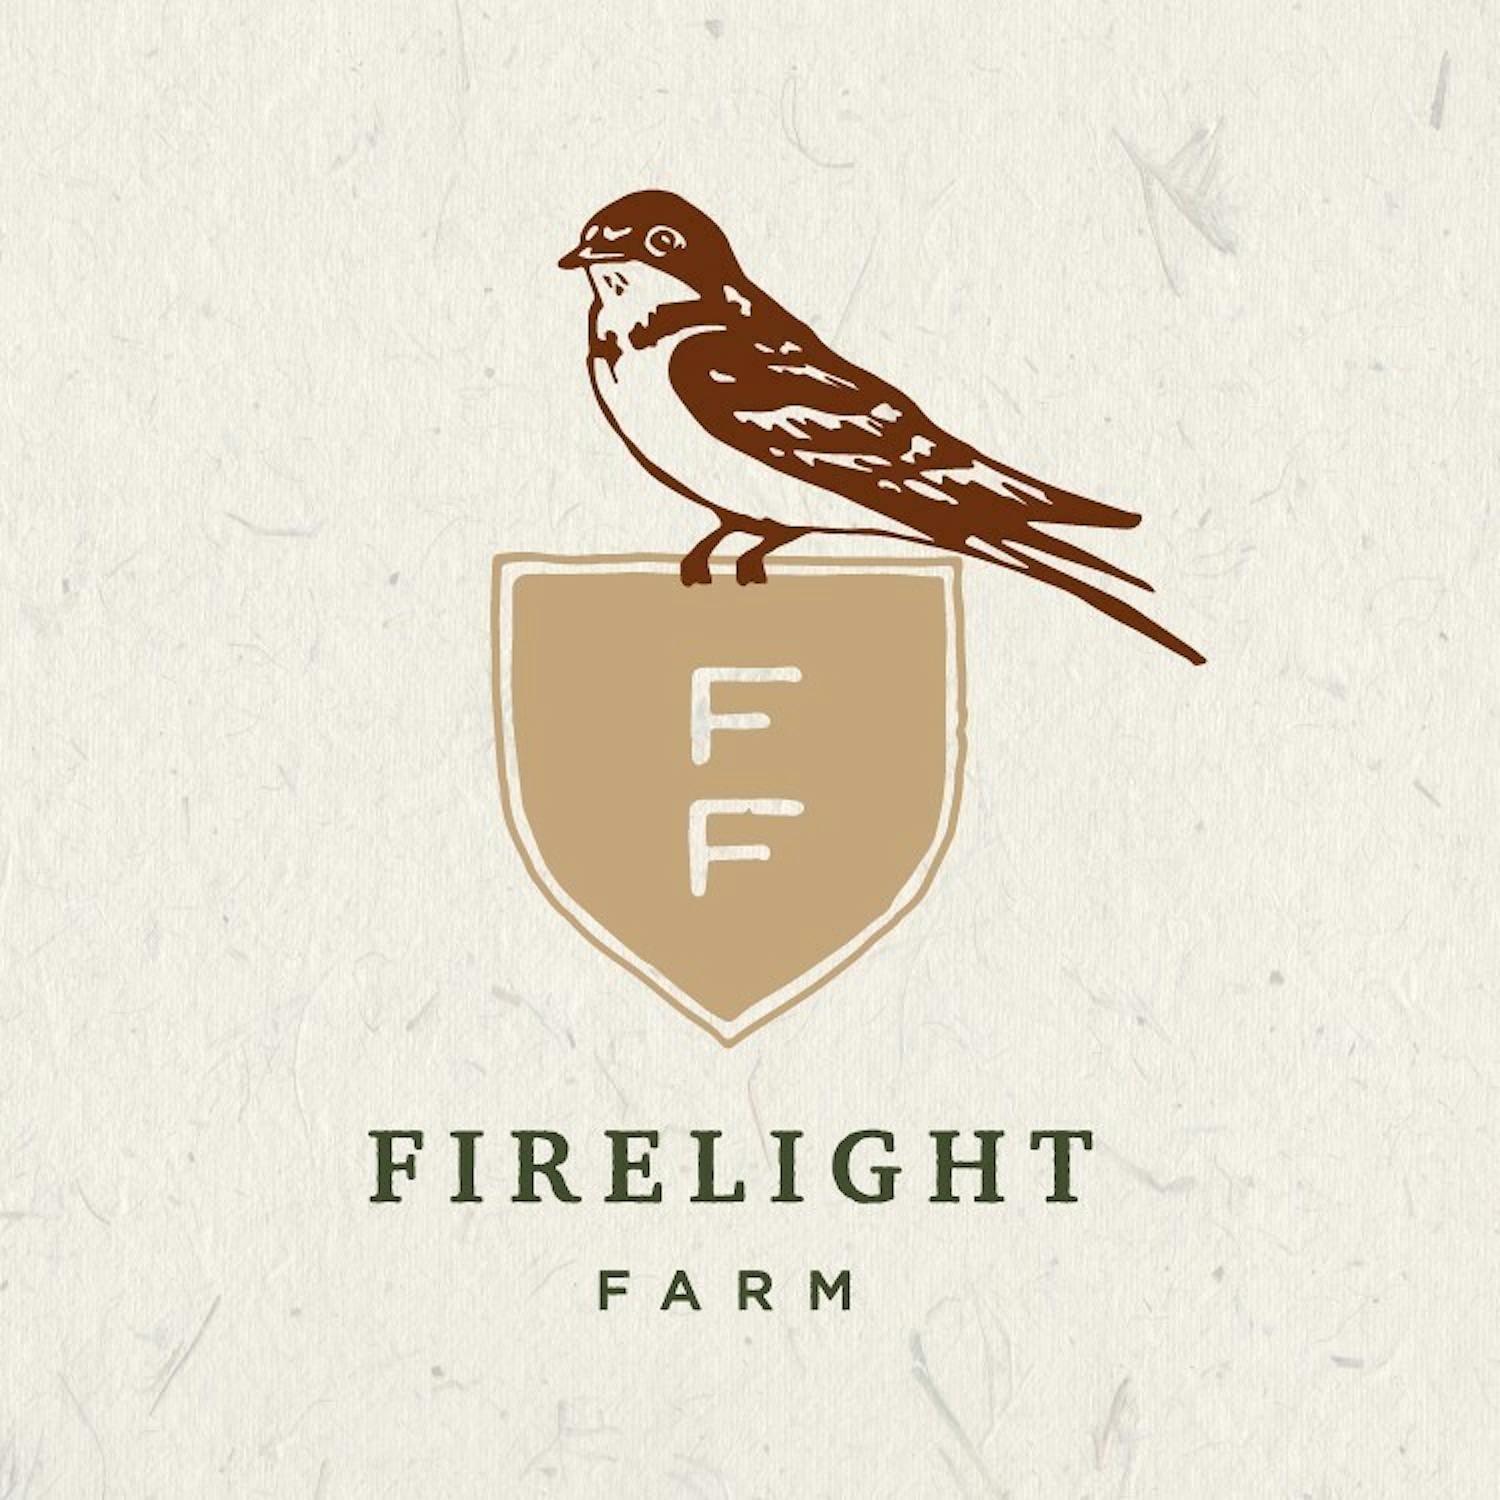 Firelight Farm